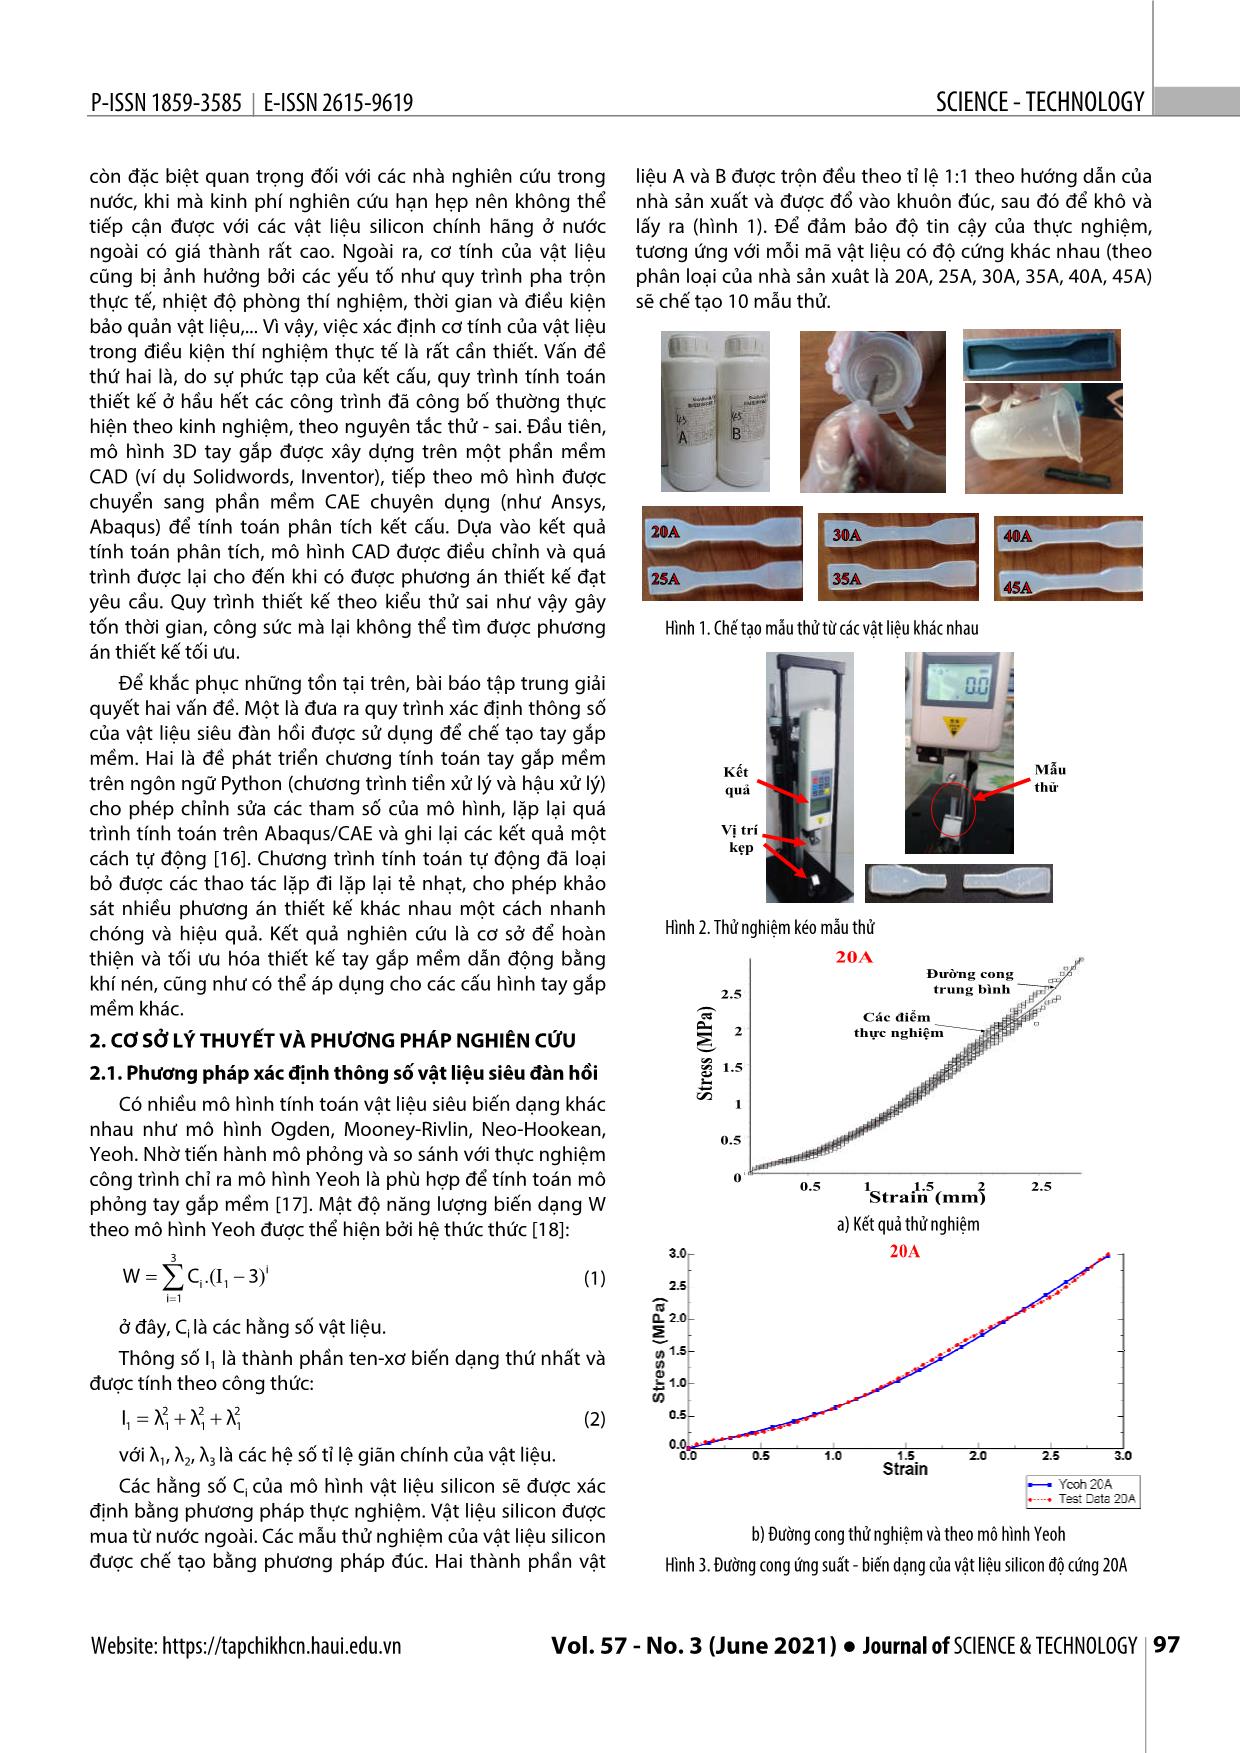 Xác định đặc trưng cơ tính của vật liệu siêu đàn hồi và tự động tính toán tay gắp mềm cho robot trang 2